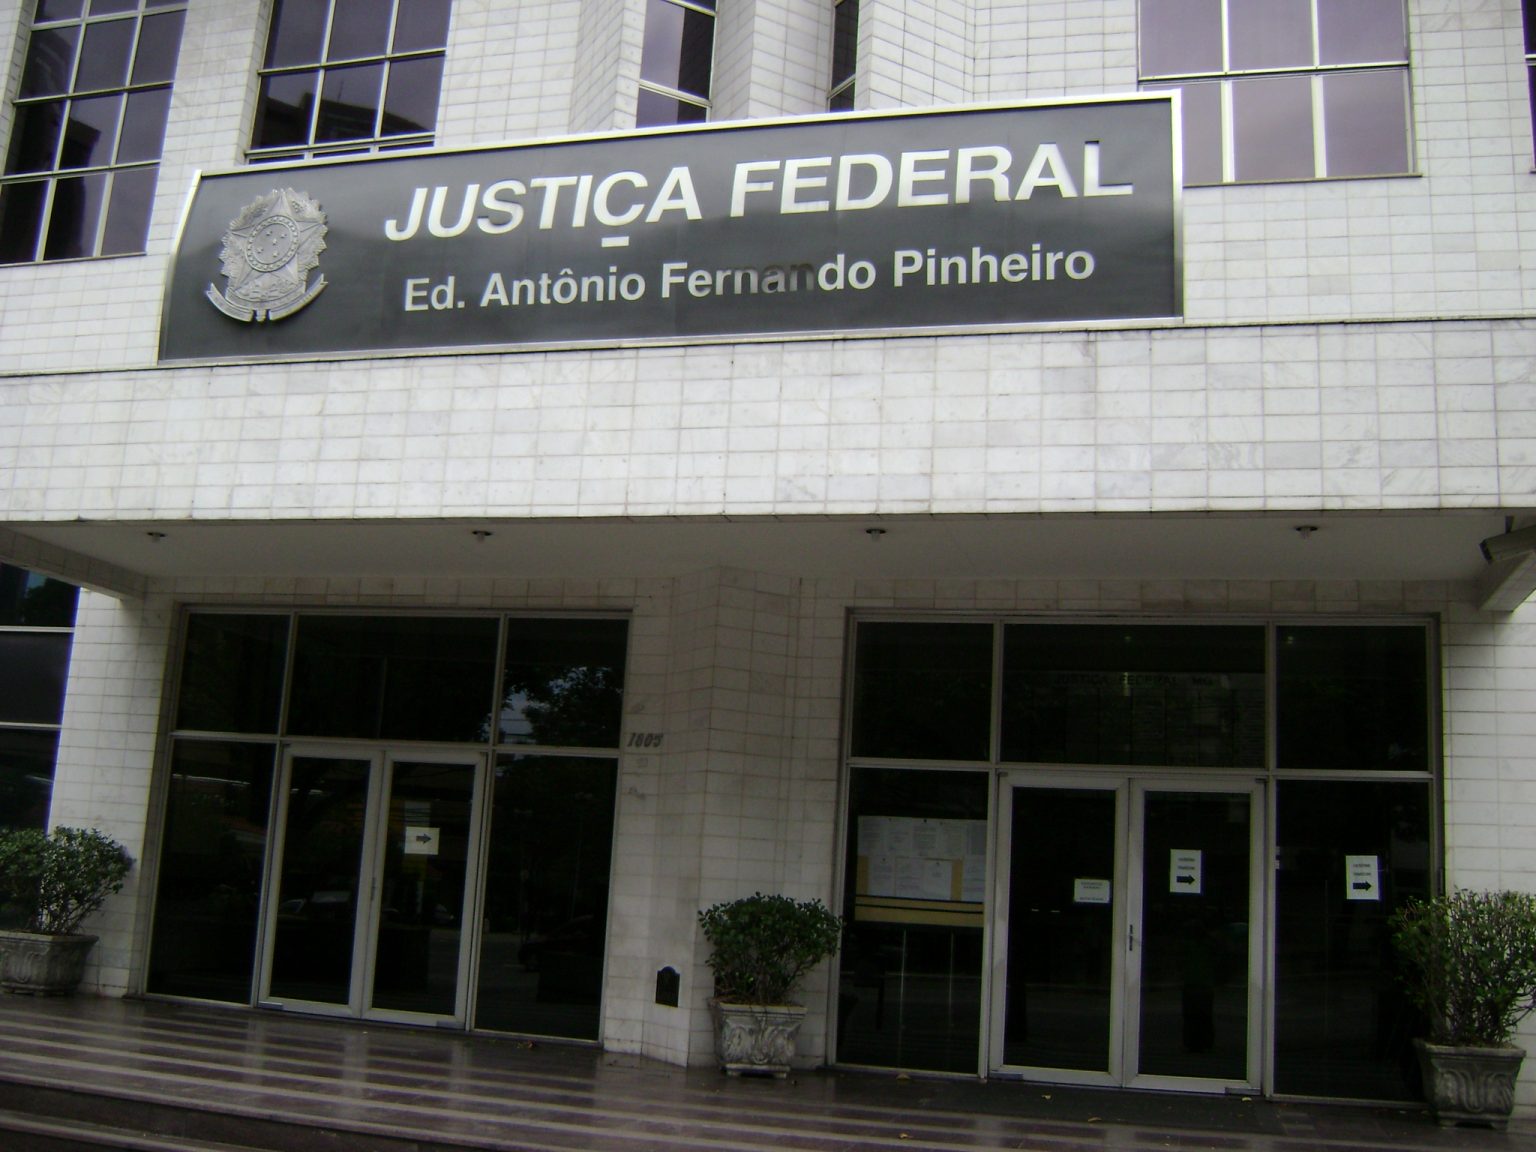 Justica_Federal_Belo_Horizonte-1536x1152.jpg